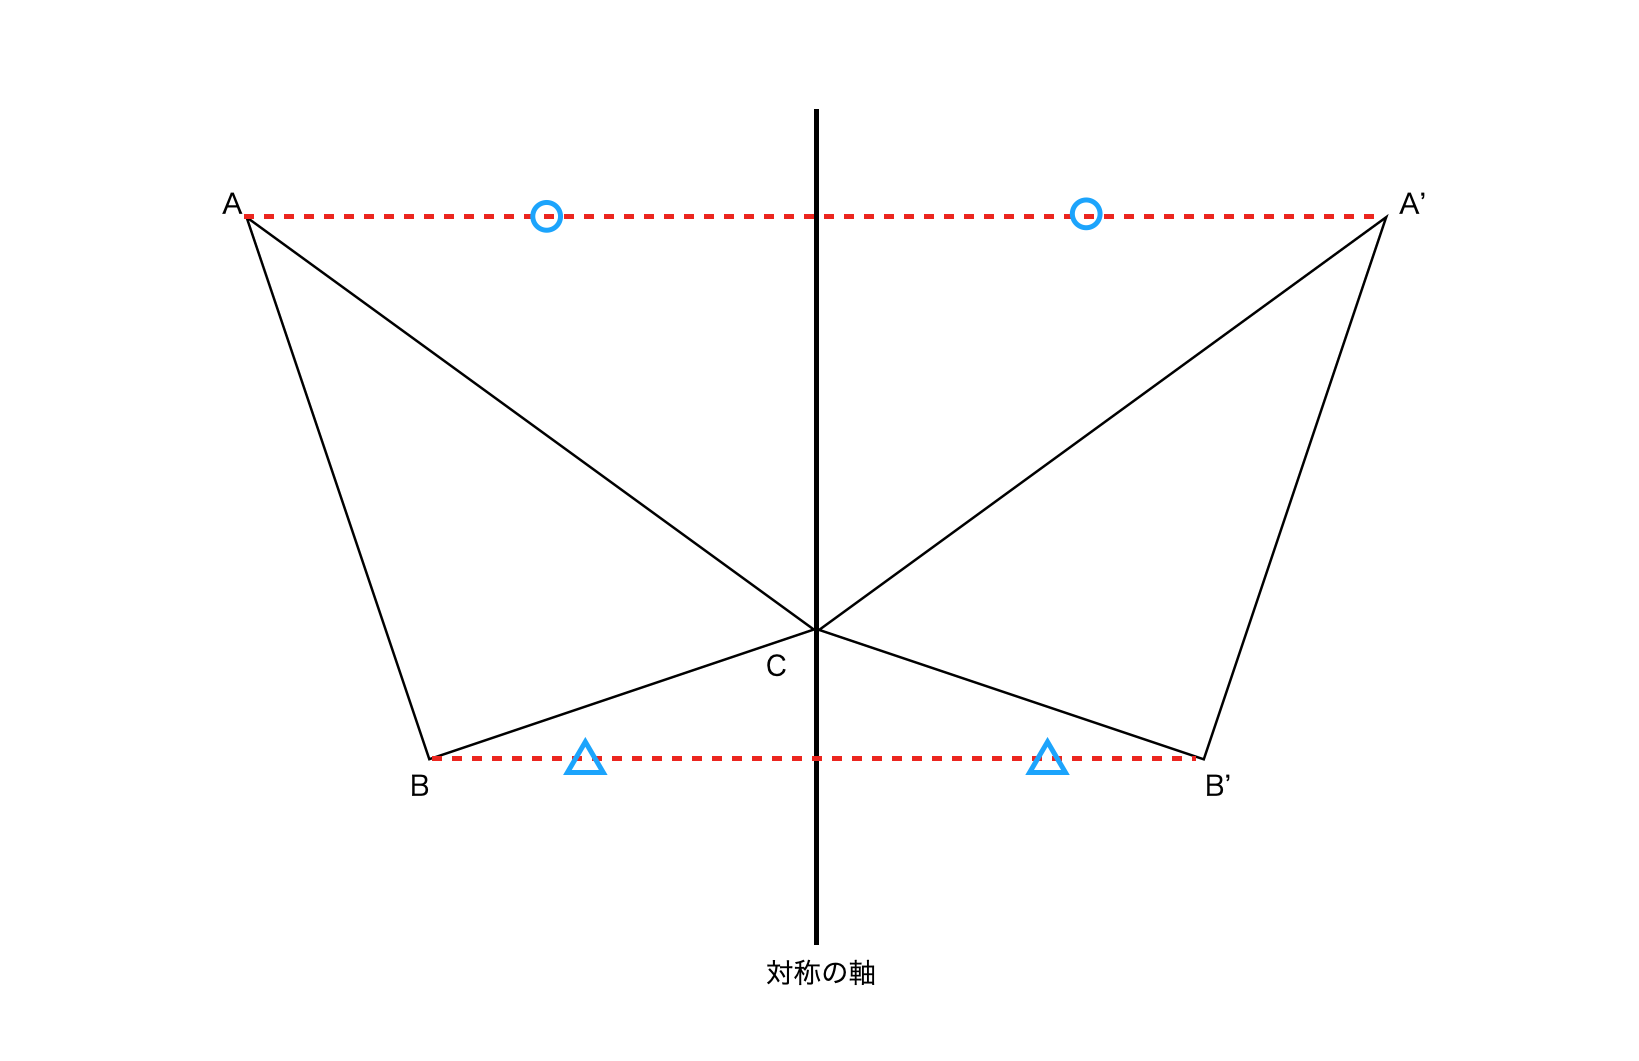 【図解】線対称の図形の作図方法②